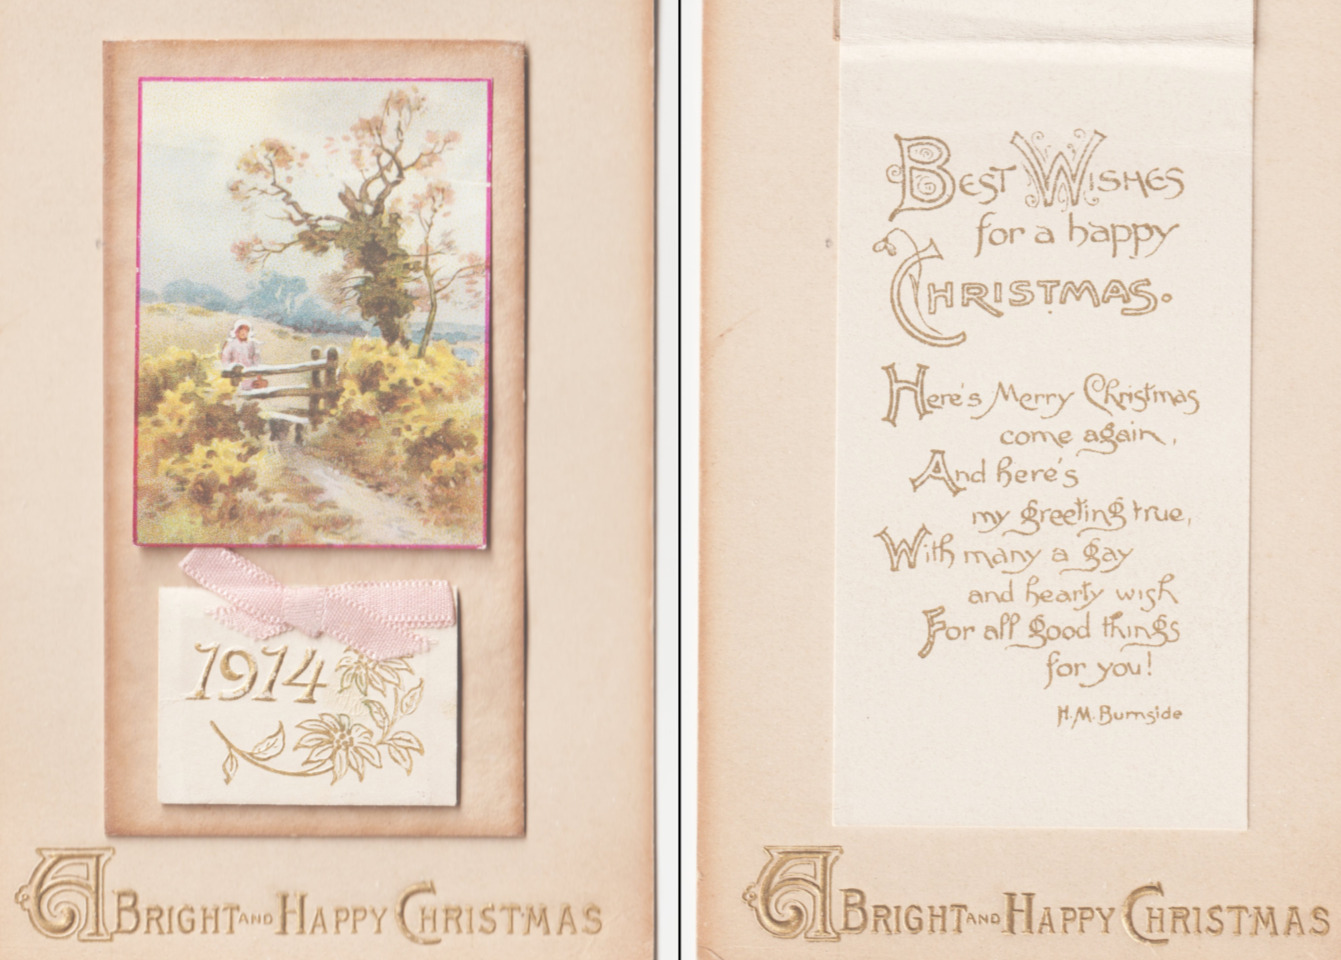 1914 Happy Merry Christmas Calendar Postcard H M Burnside Greeting Poem Embossed